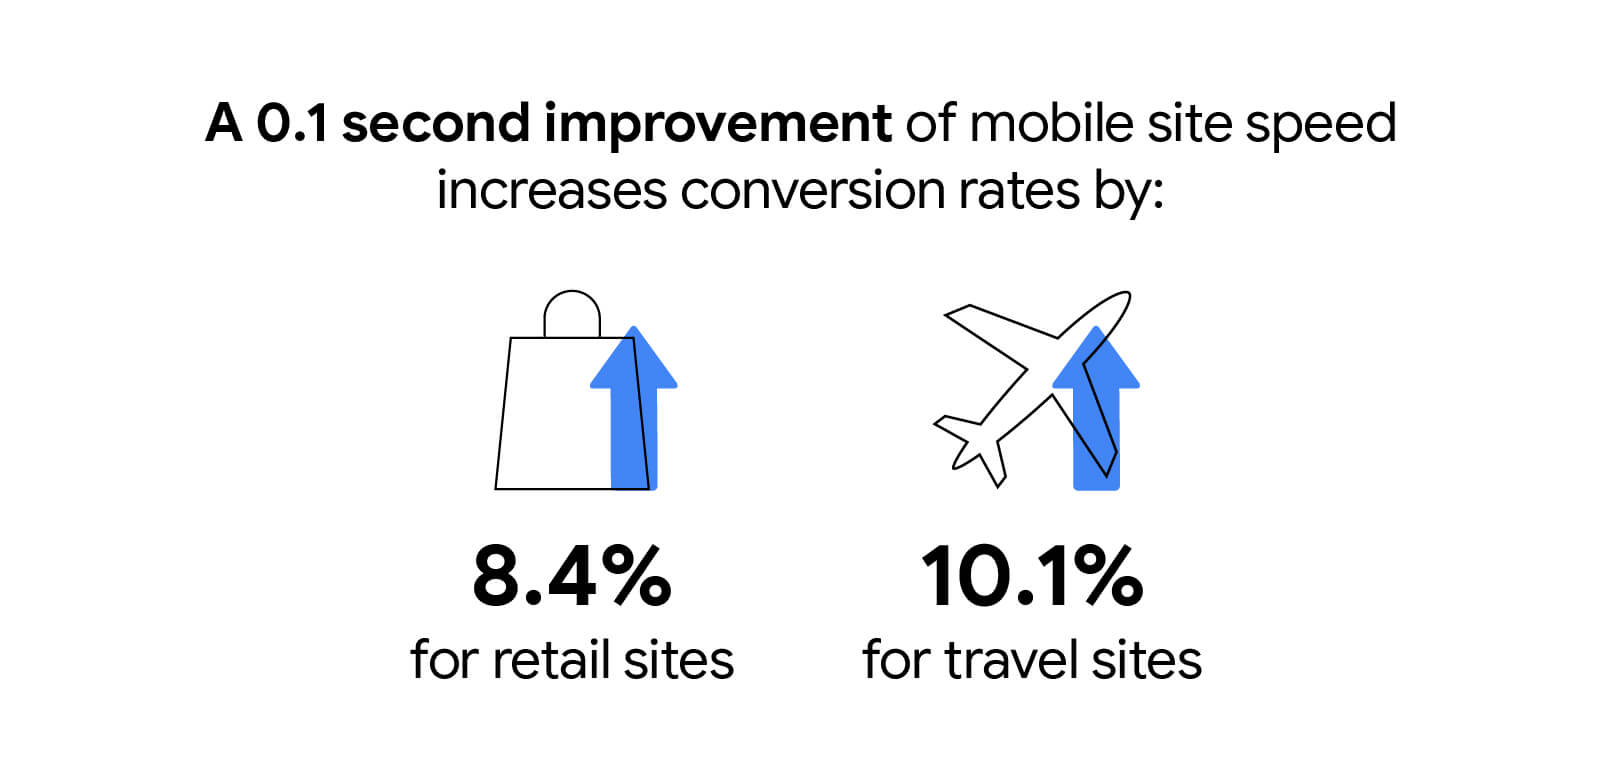 Увеличение скорости мобильного сайта на 0,1 секунды увеличивает коэффициент конверсии на 8,4% для розничных сайтов и на 10,1% для туристических сайтов.